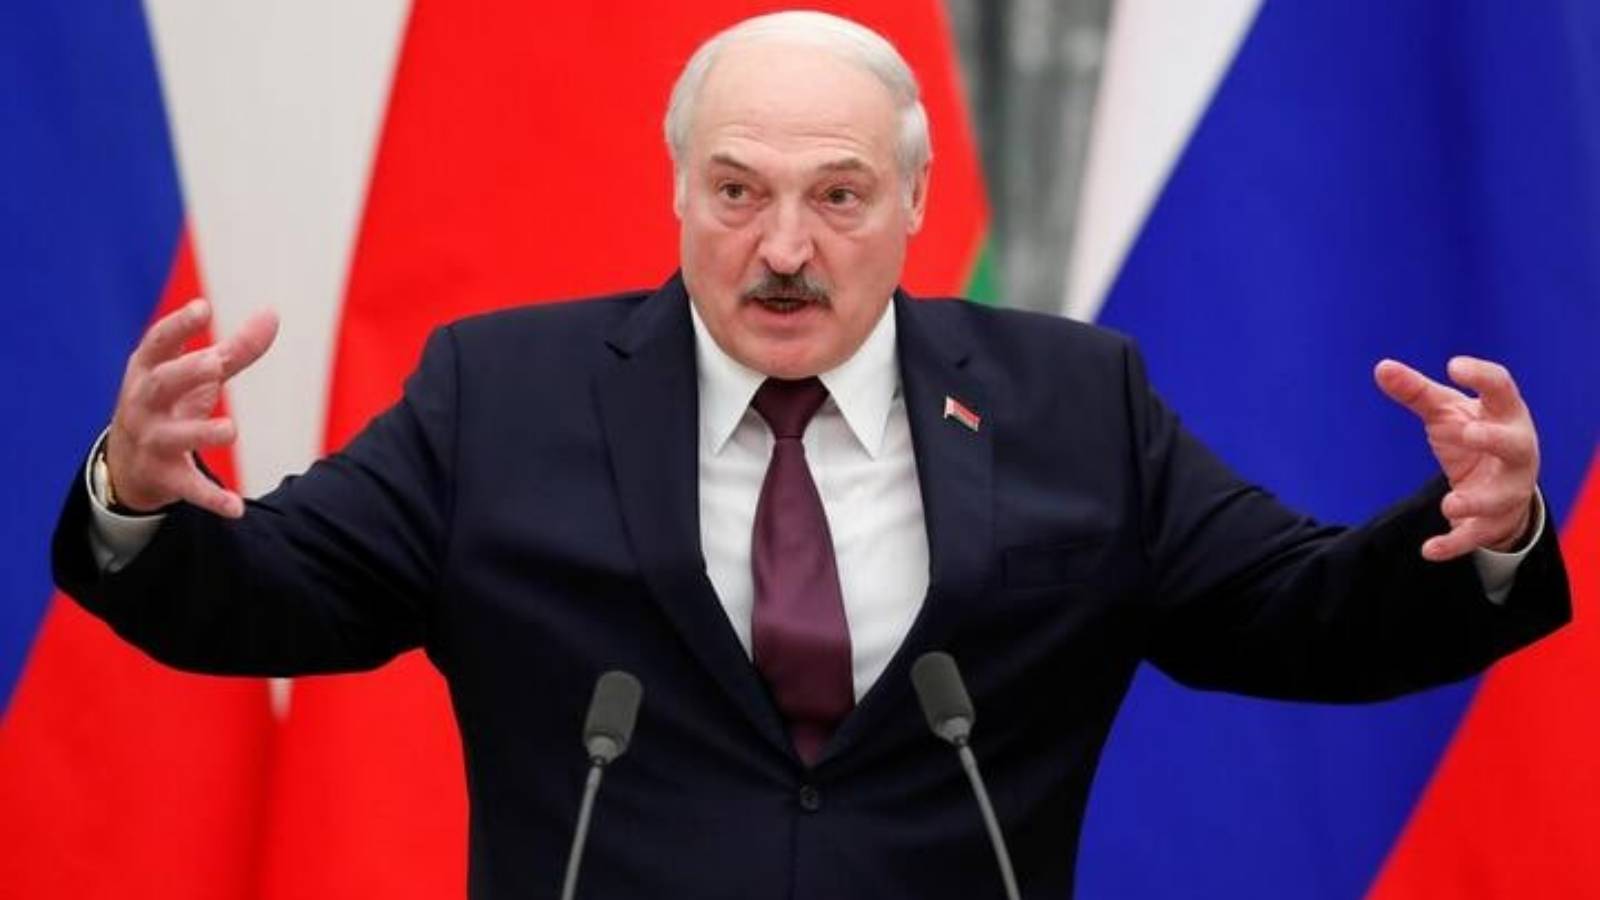 Lukașenko - sursa foto - idevice.ro